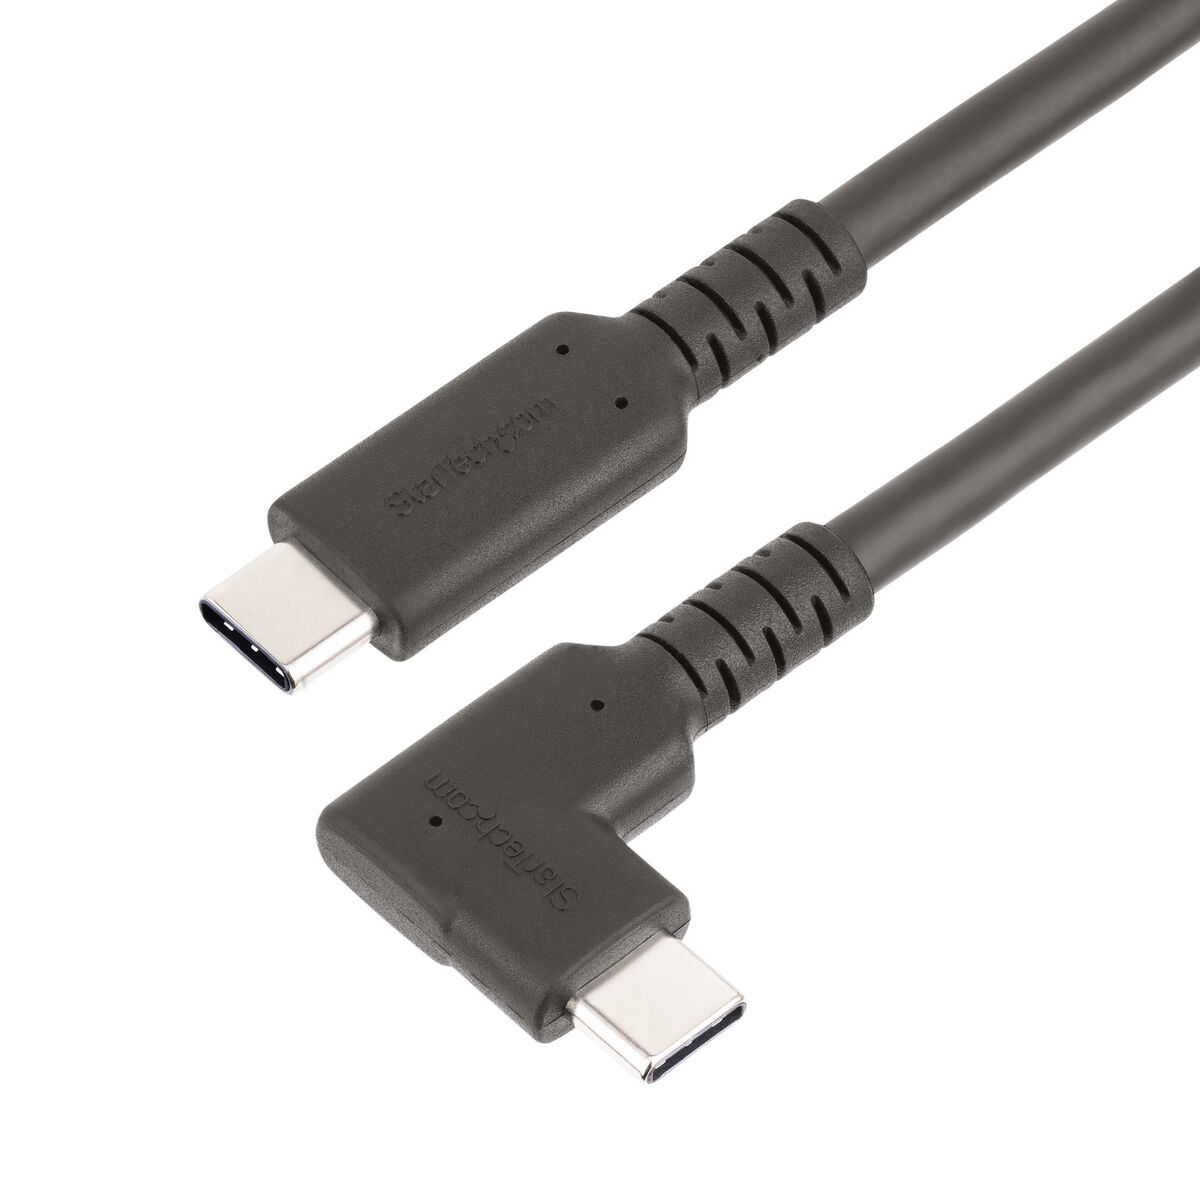 USB-Kabel STARTECH RUSB315CC2MBR